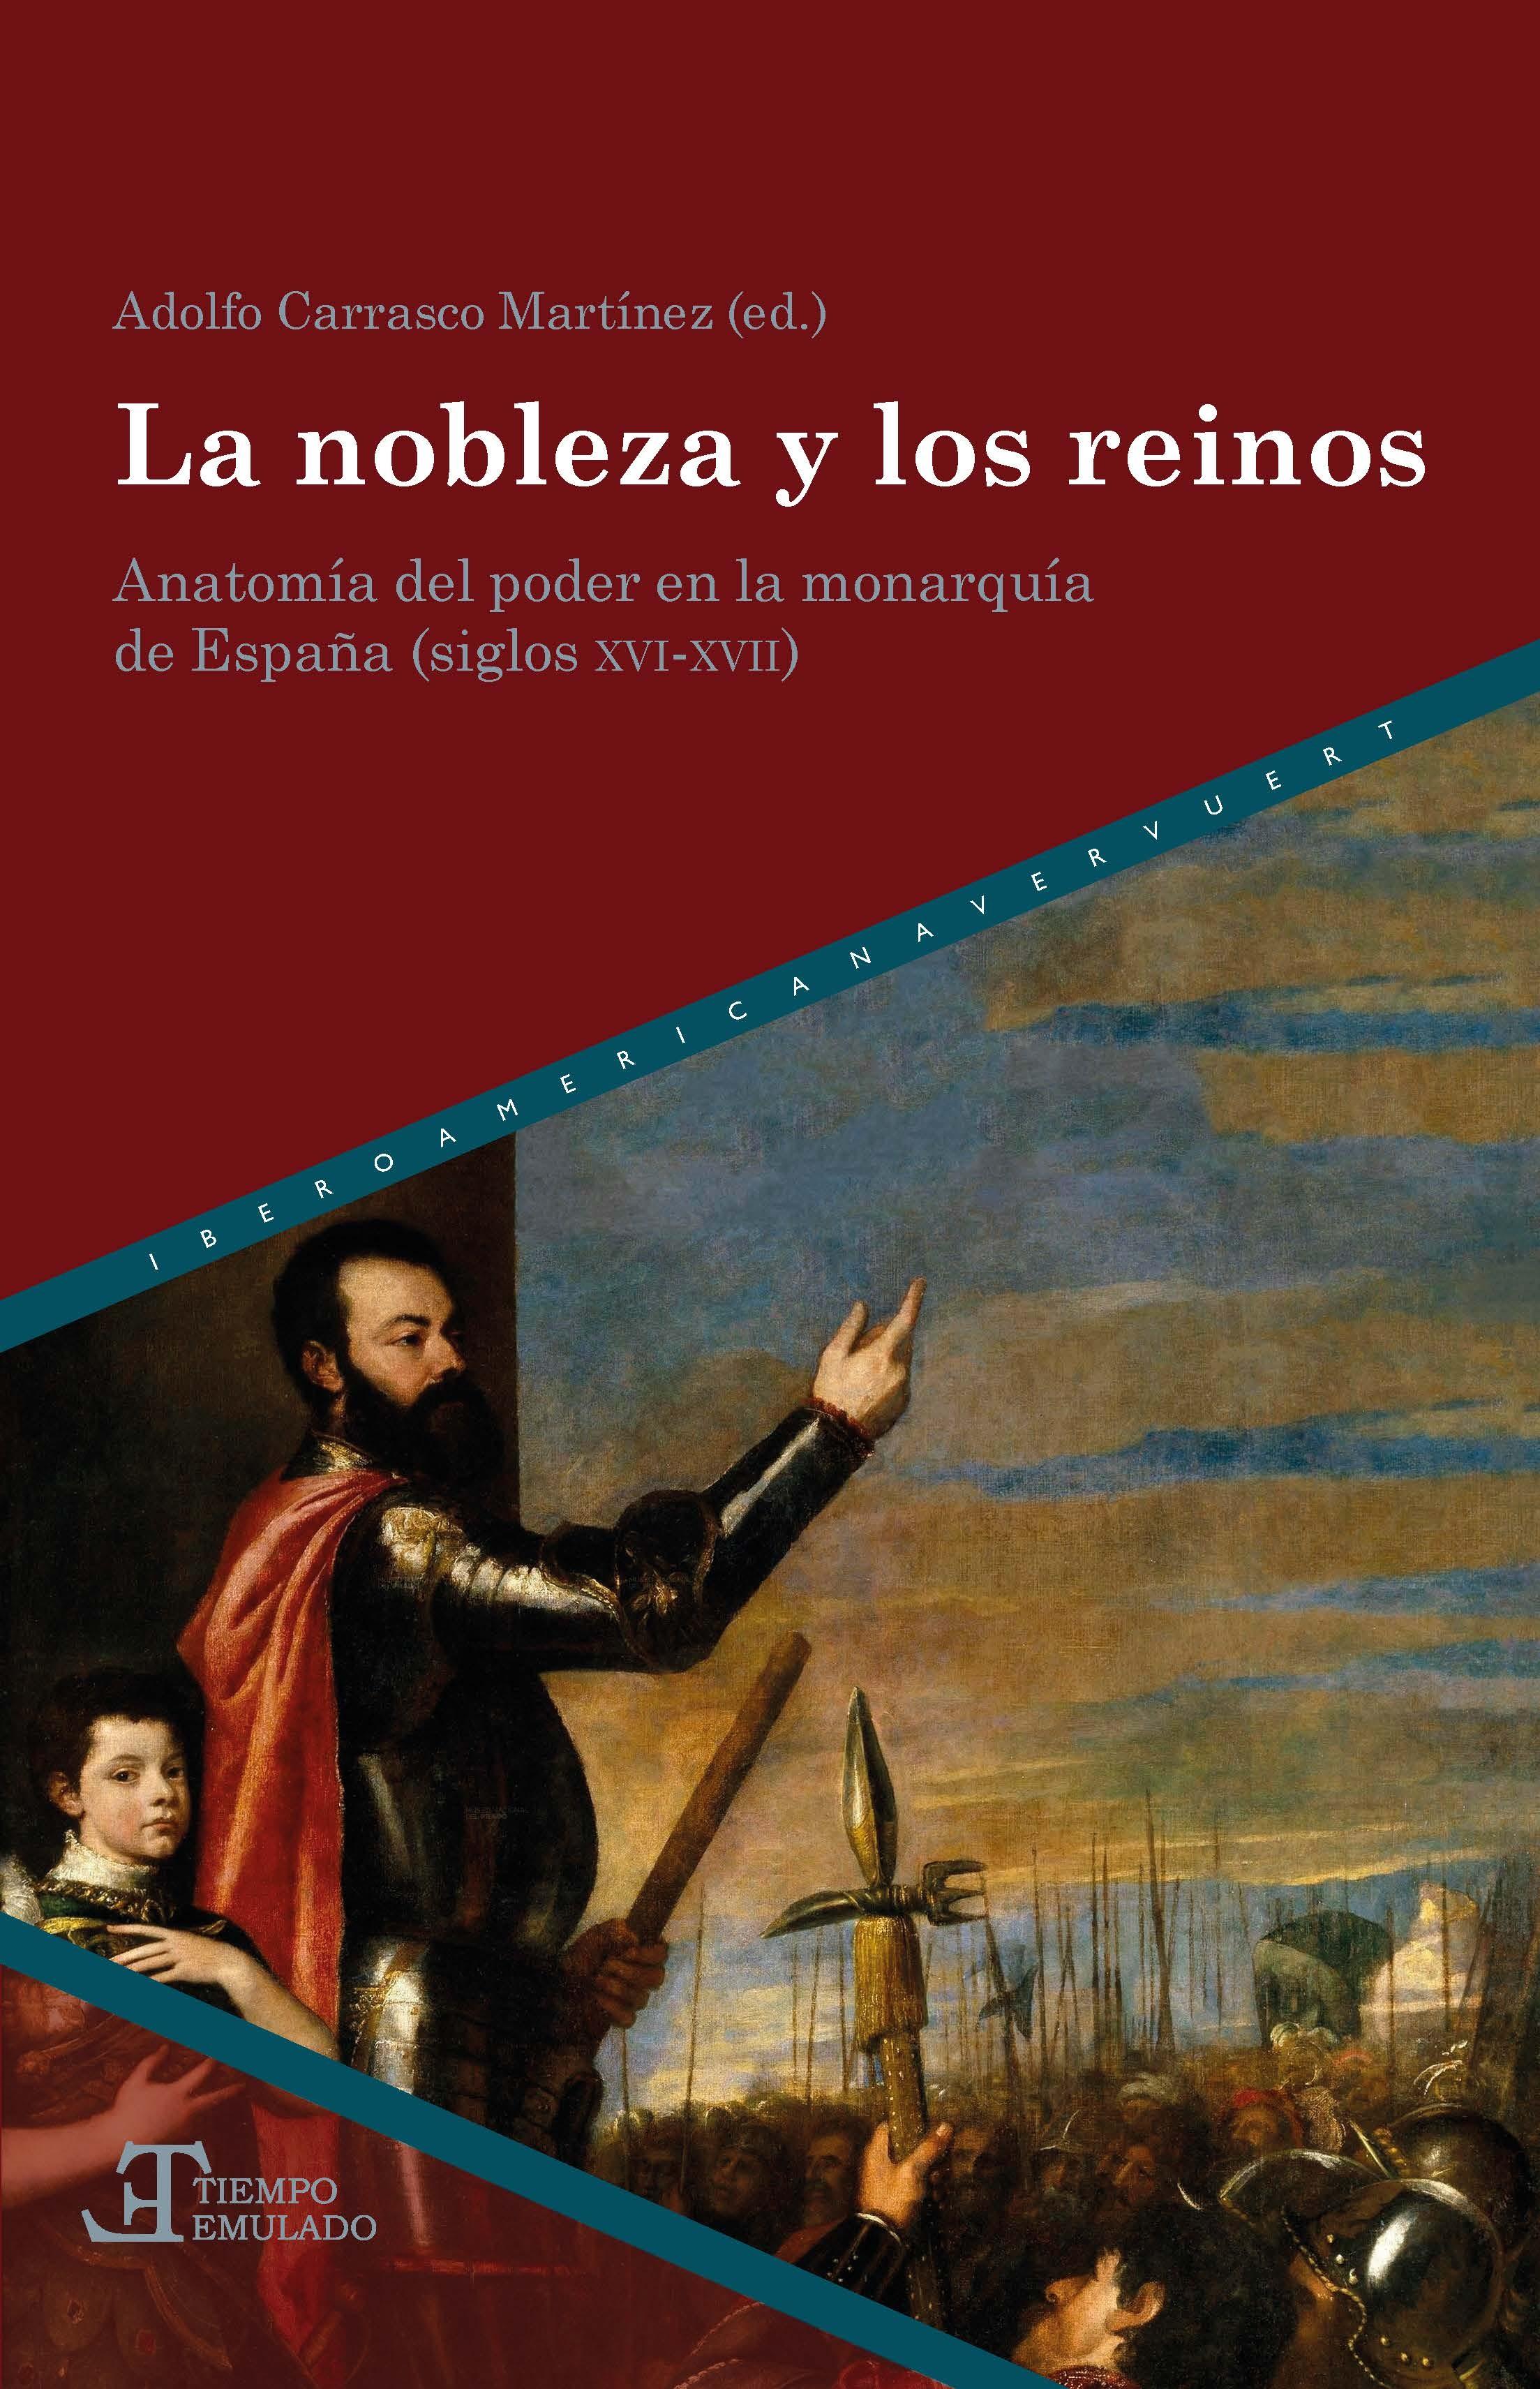 La nobleza y los reinos. Anatomía del poder en la Monarquía de España (siglos XVI-XVII)